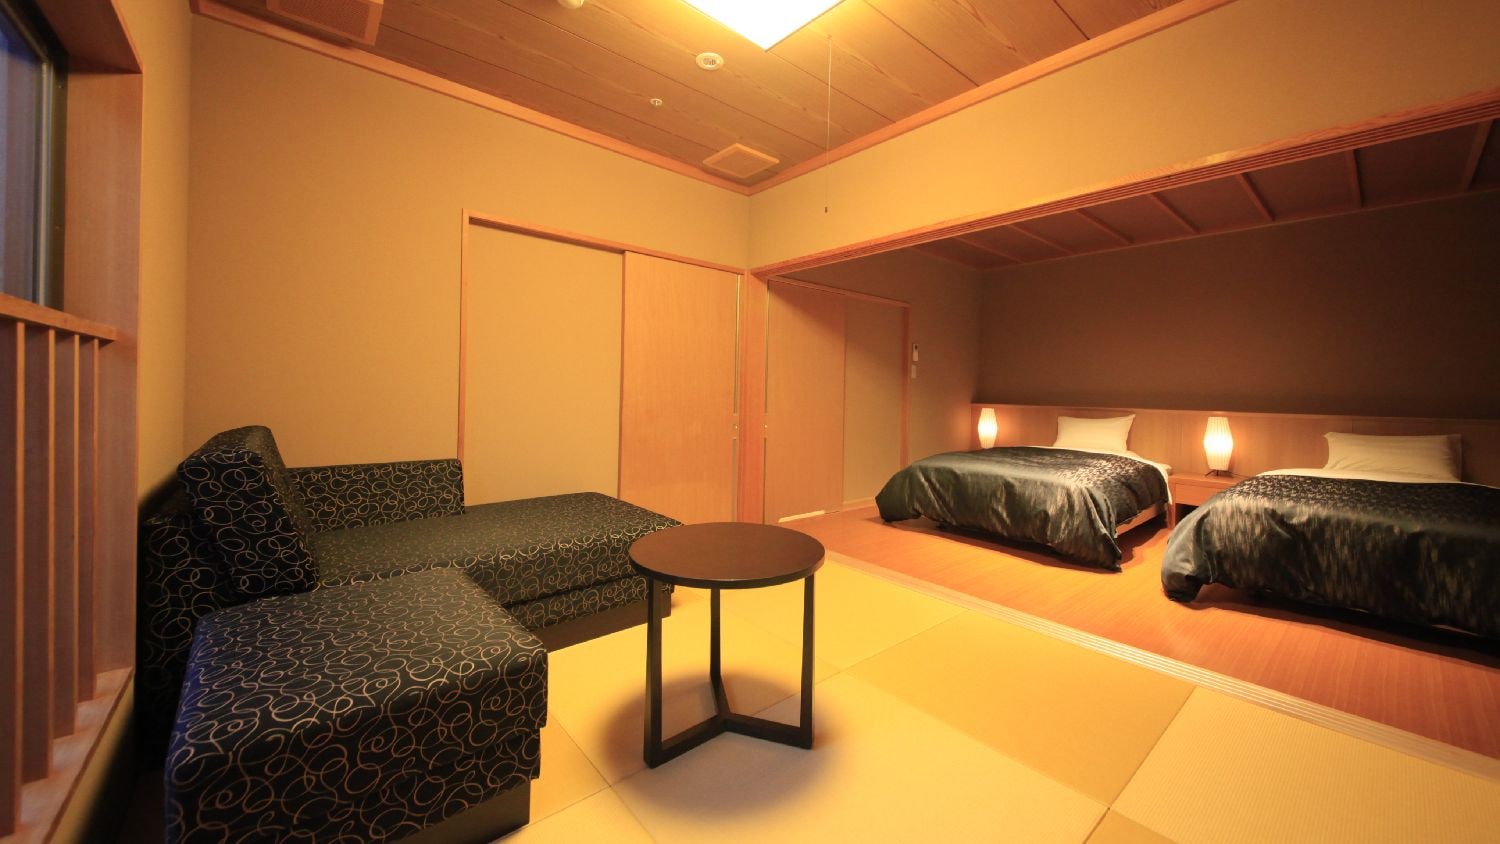 [ห้องพักพร้อมห้องอาบน้ำแบบเปิดโล่ง, ปลอดบุหรี่] บ่อน้ำพุร้อนธรรมชาติ 100% ห้องแบบญี่ปุ่นผสมตะวันตกพร้อมที่อาบน้ำแบบเปิดโล่ง